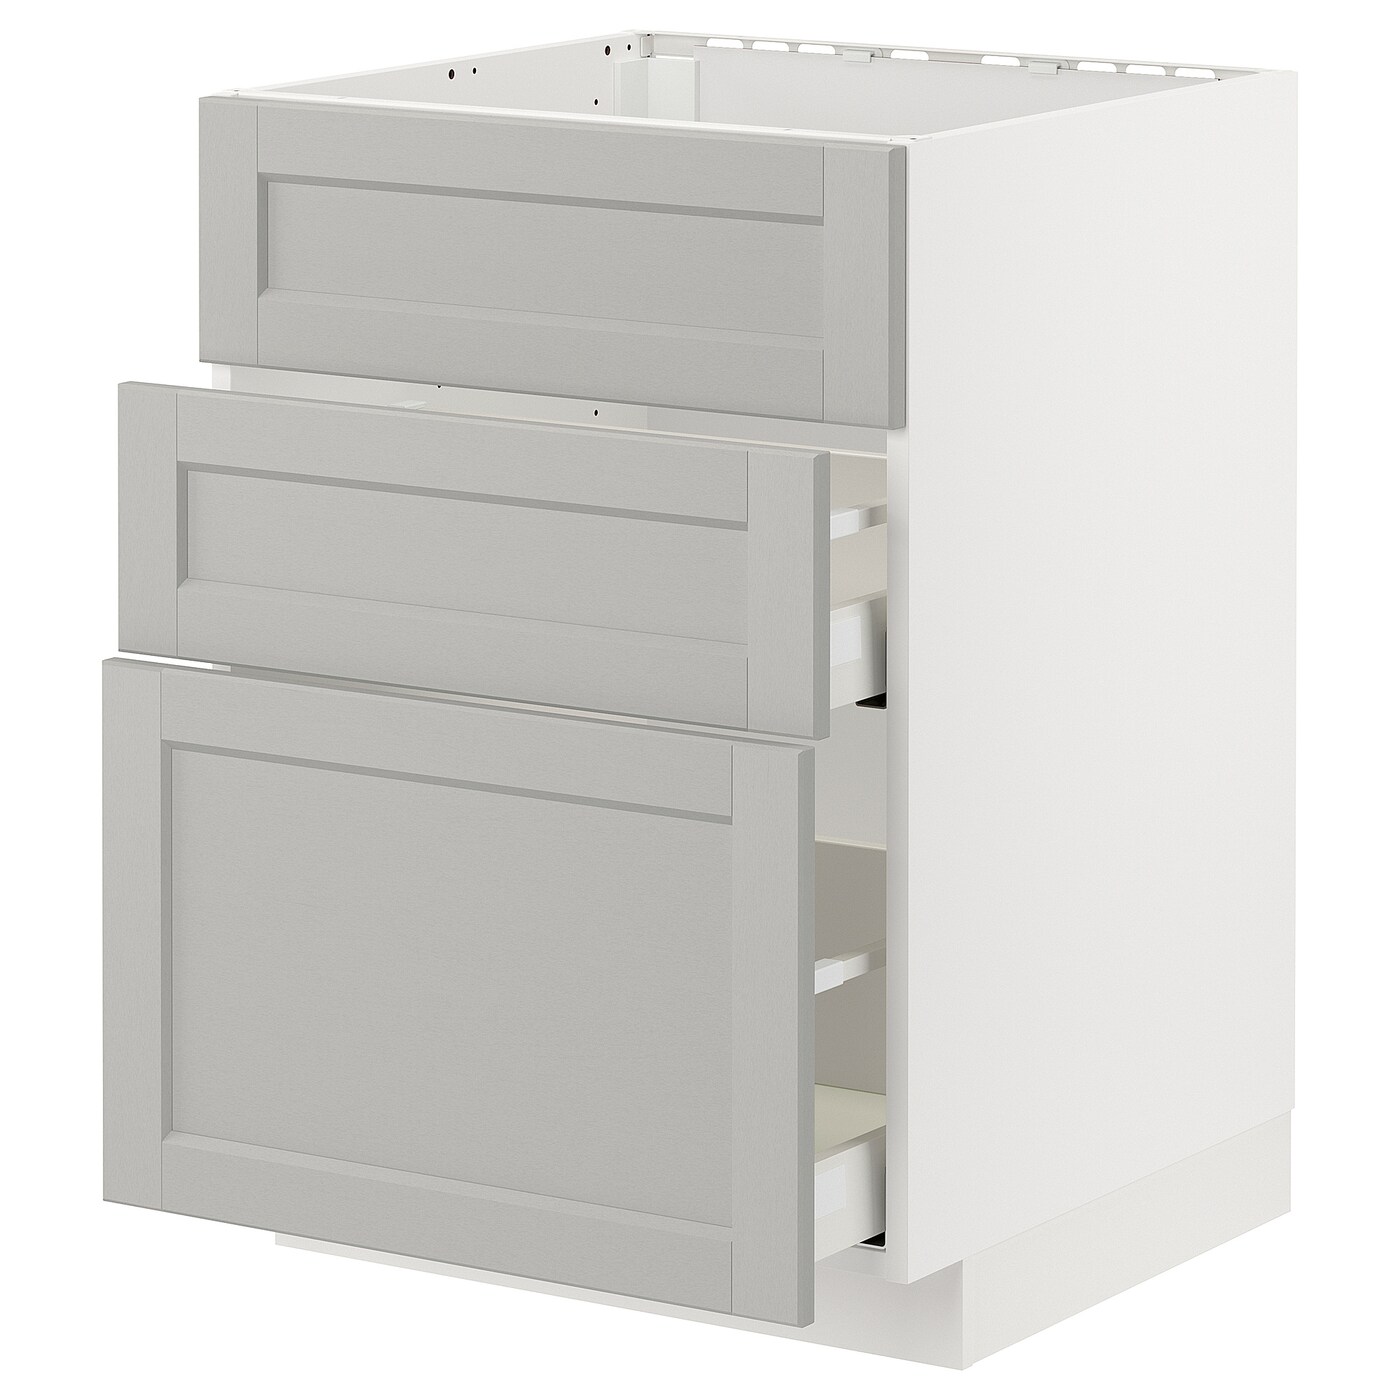 Напольный кухонный шкаф  - IKEA METOD MAXIMERA, 62x80x60см, белый/серый, МЕТОД МАКСИМЕРА ИКЕА